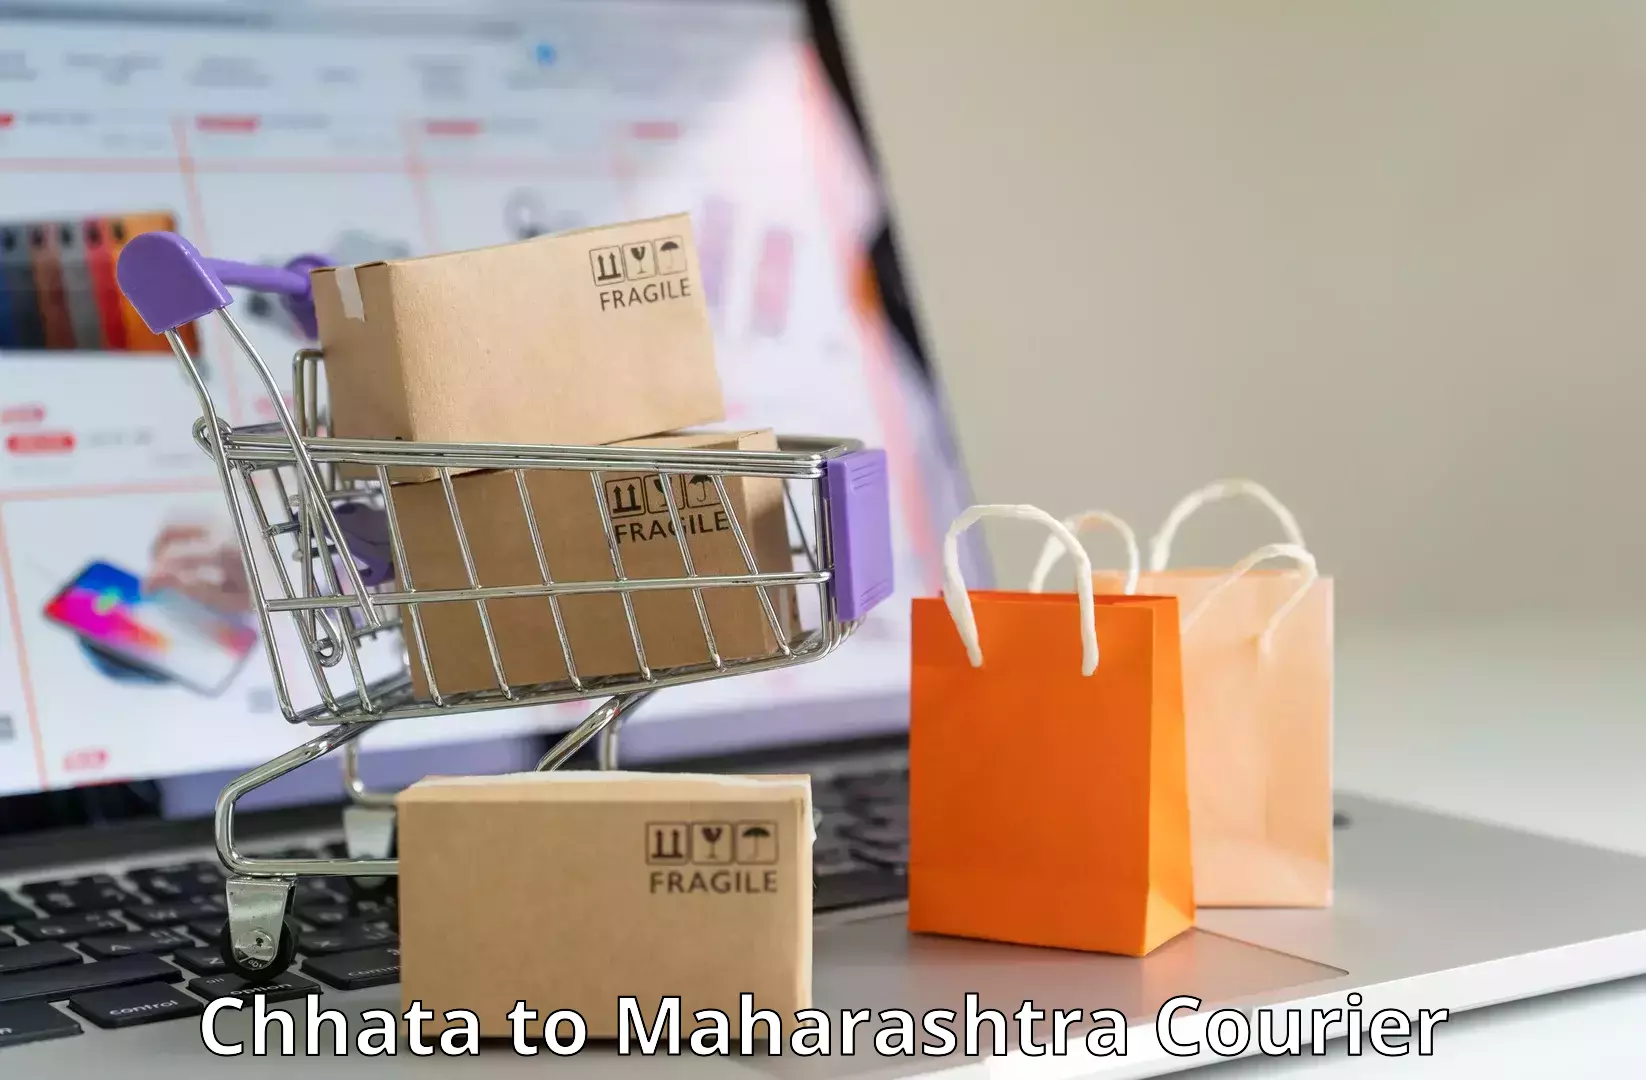 Premium courier solutions Chhata to Maharashtra